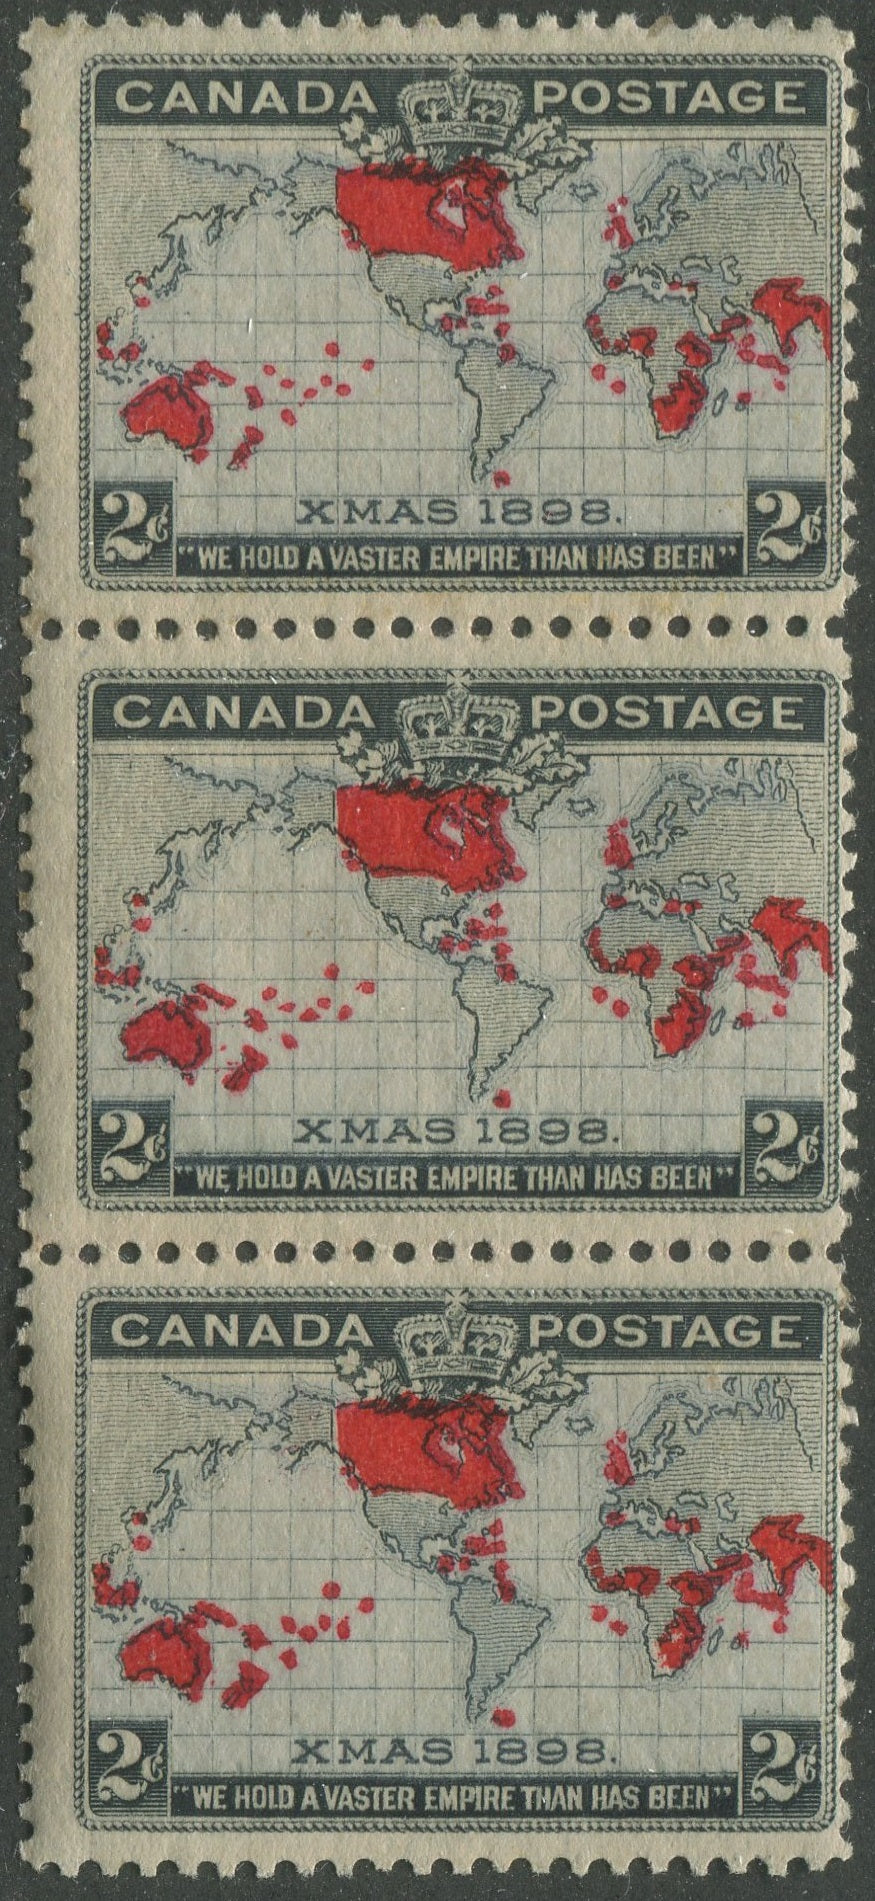 0085CA2302 - Canada #85 Mint Strip of 3